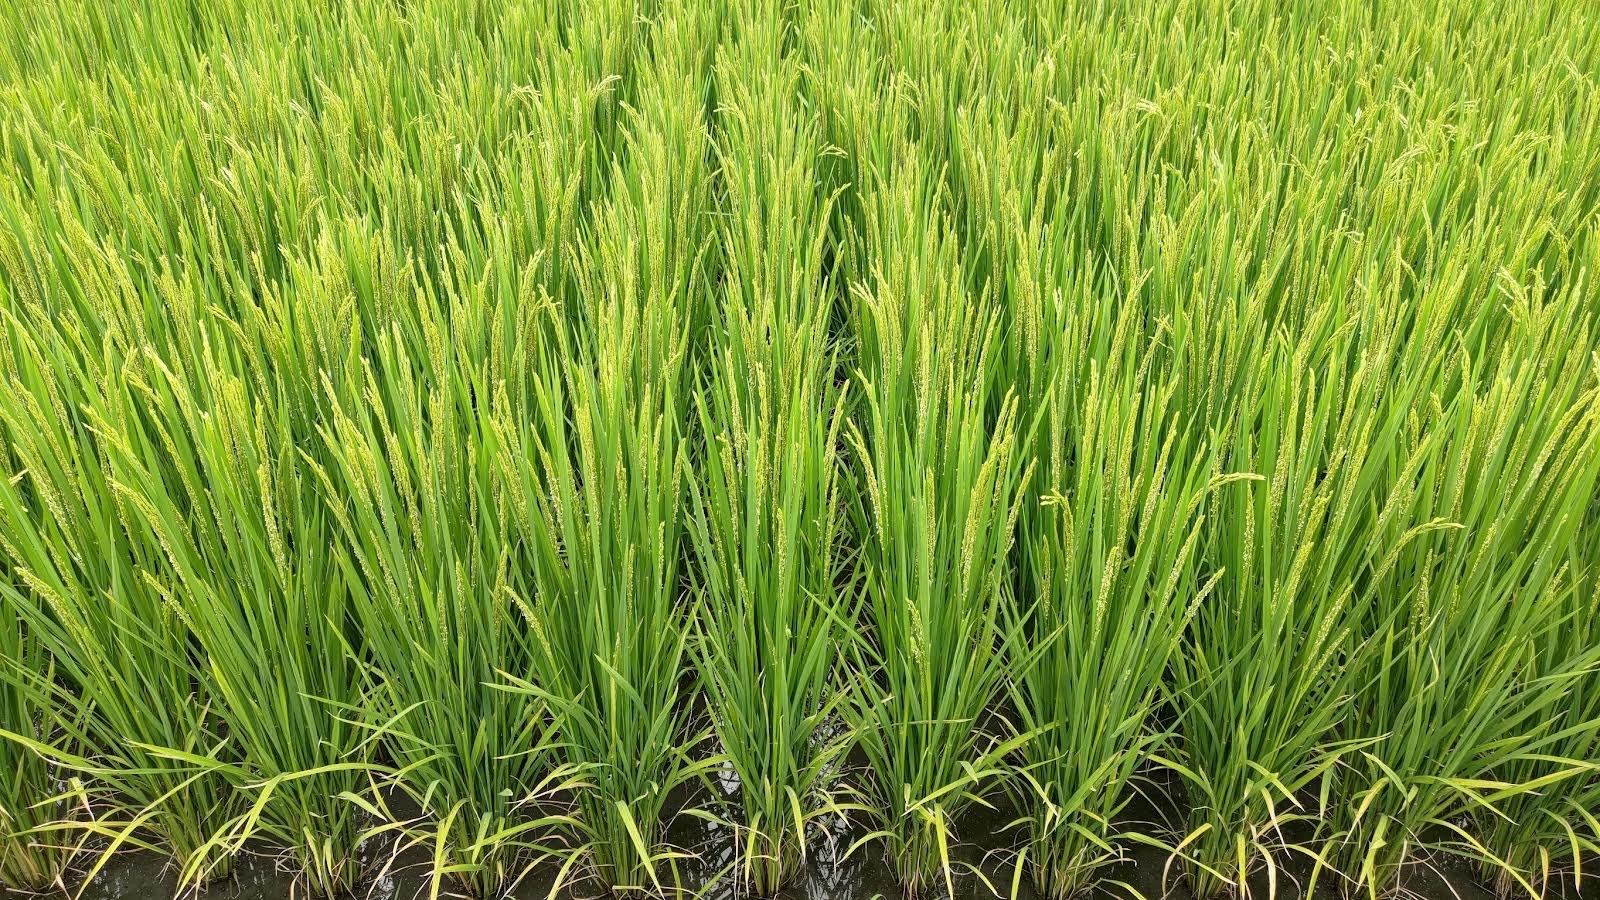 水稻抽穗期，田間之灌排水溝渠要儘快進行清除，避免颱風豪雨積水